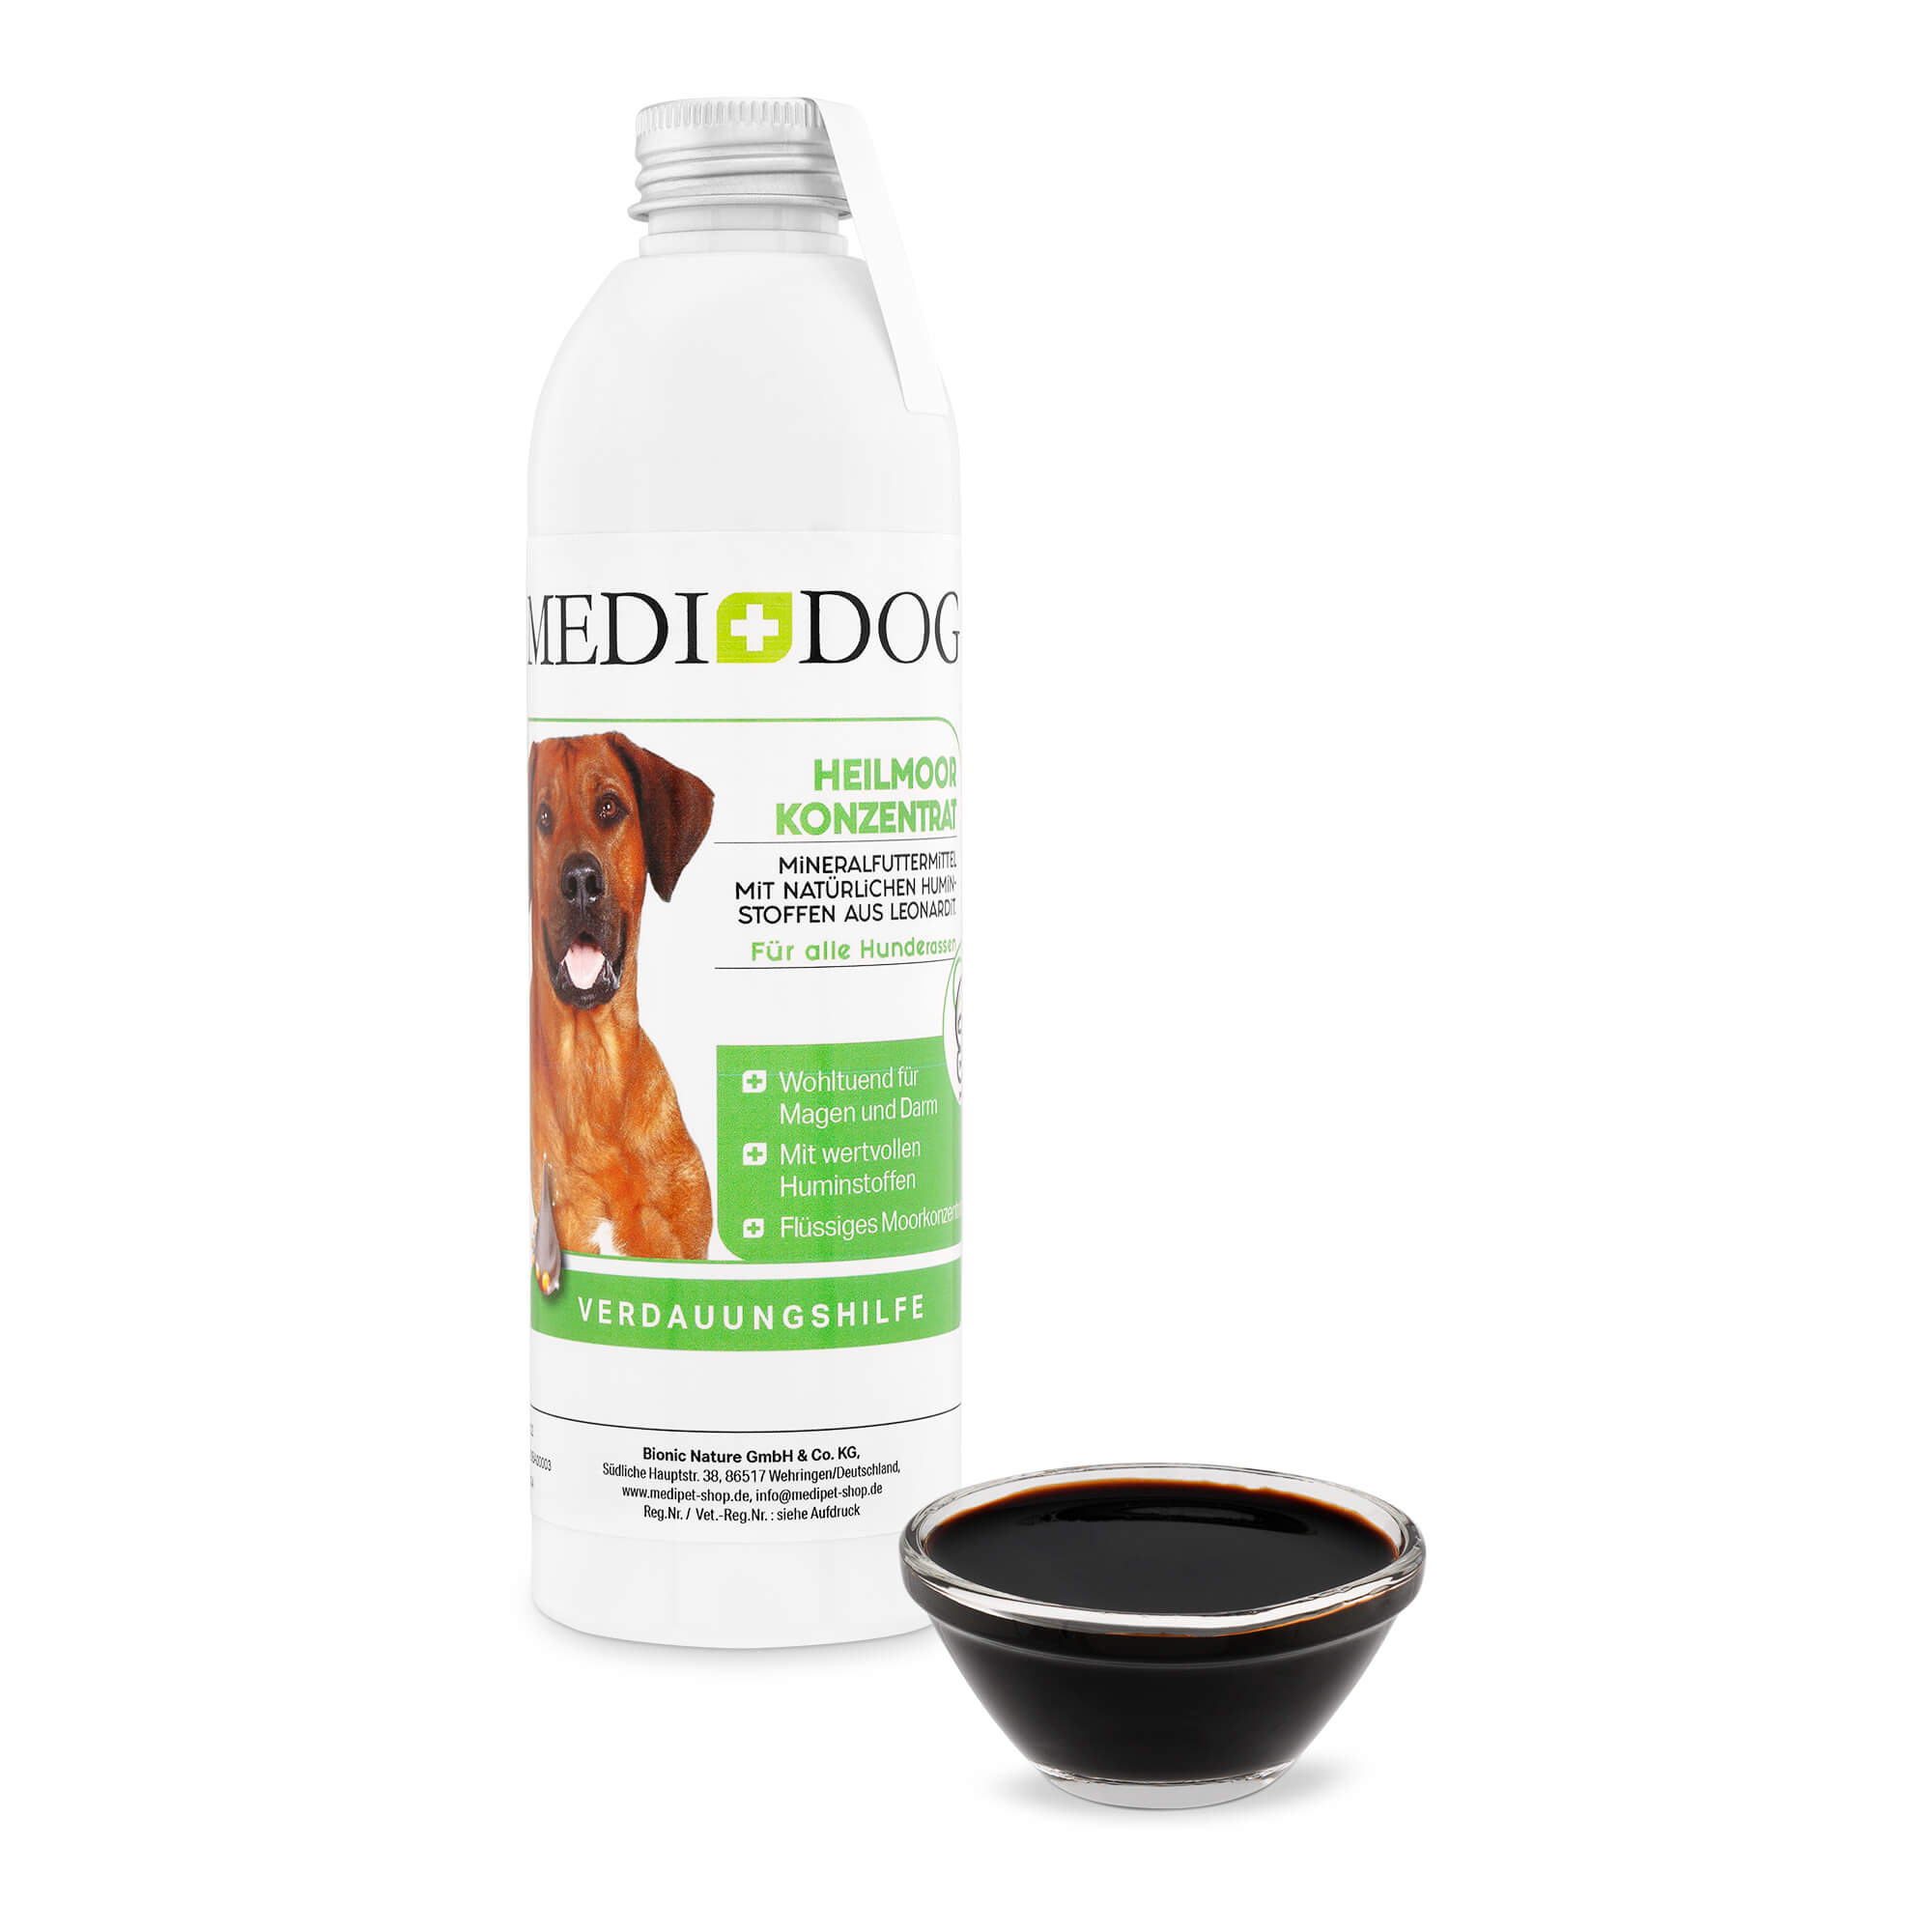 Medidog Heilmoor Konzentrat für Hunde - bringt einen enorm hohen Anteil an Huminstoffen mit, die den Magen-Darm-Trakt deines Hundes wieder harmonisieren und in seiner natürlichen Funktionalität stärken können